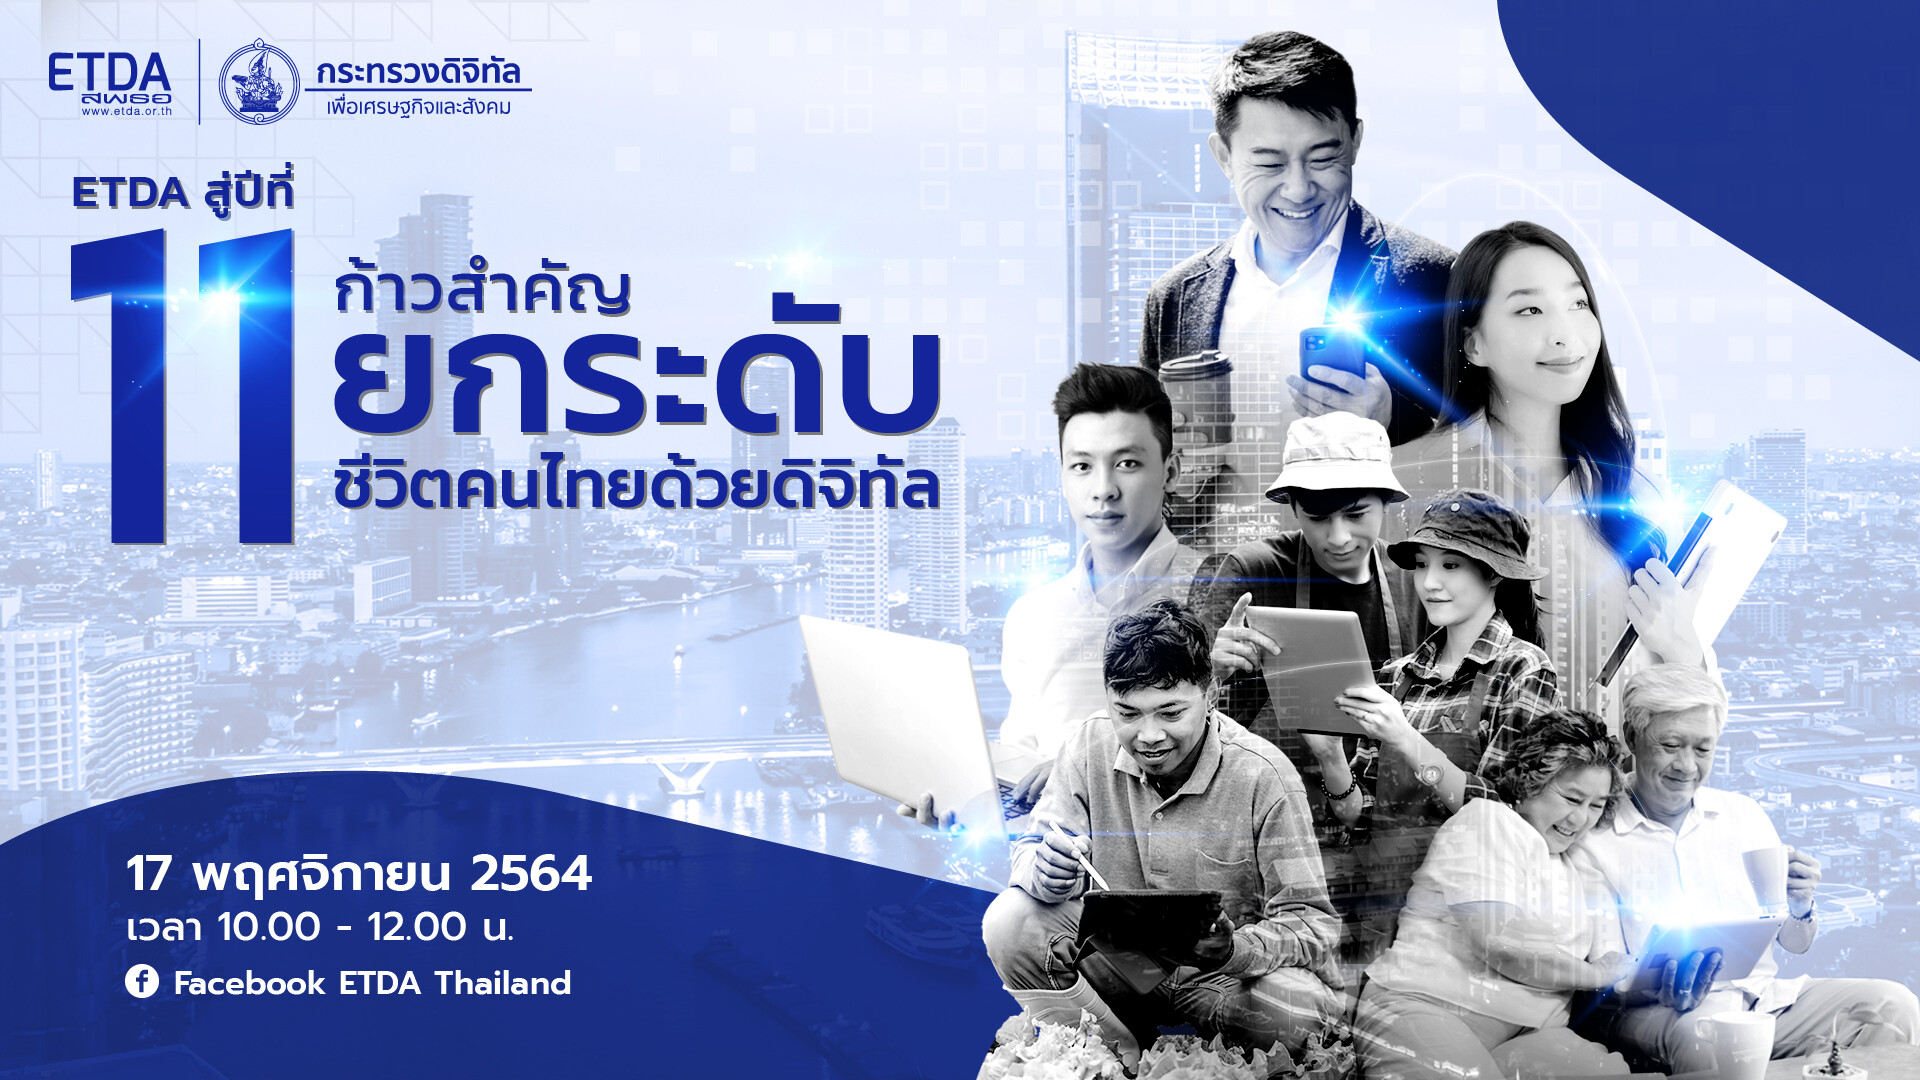 จัดใหญ่รับปีที่ 11! ETDA เตรียมเปิดผลความสำเร็จการขับเคลื่อนธุรกรรมออนไลน์ประเทศ พร้อมก้าวใหม่ ปี 65 ก้าวสำคัญของ "การยกระดับชีวิตคนไทยด้วยดิจิทัล"